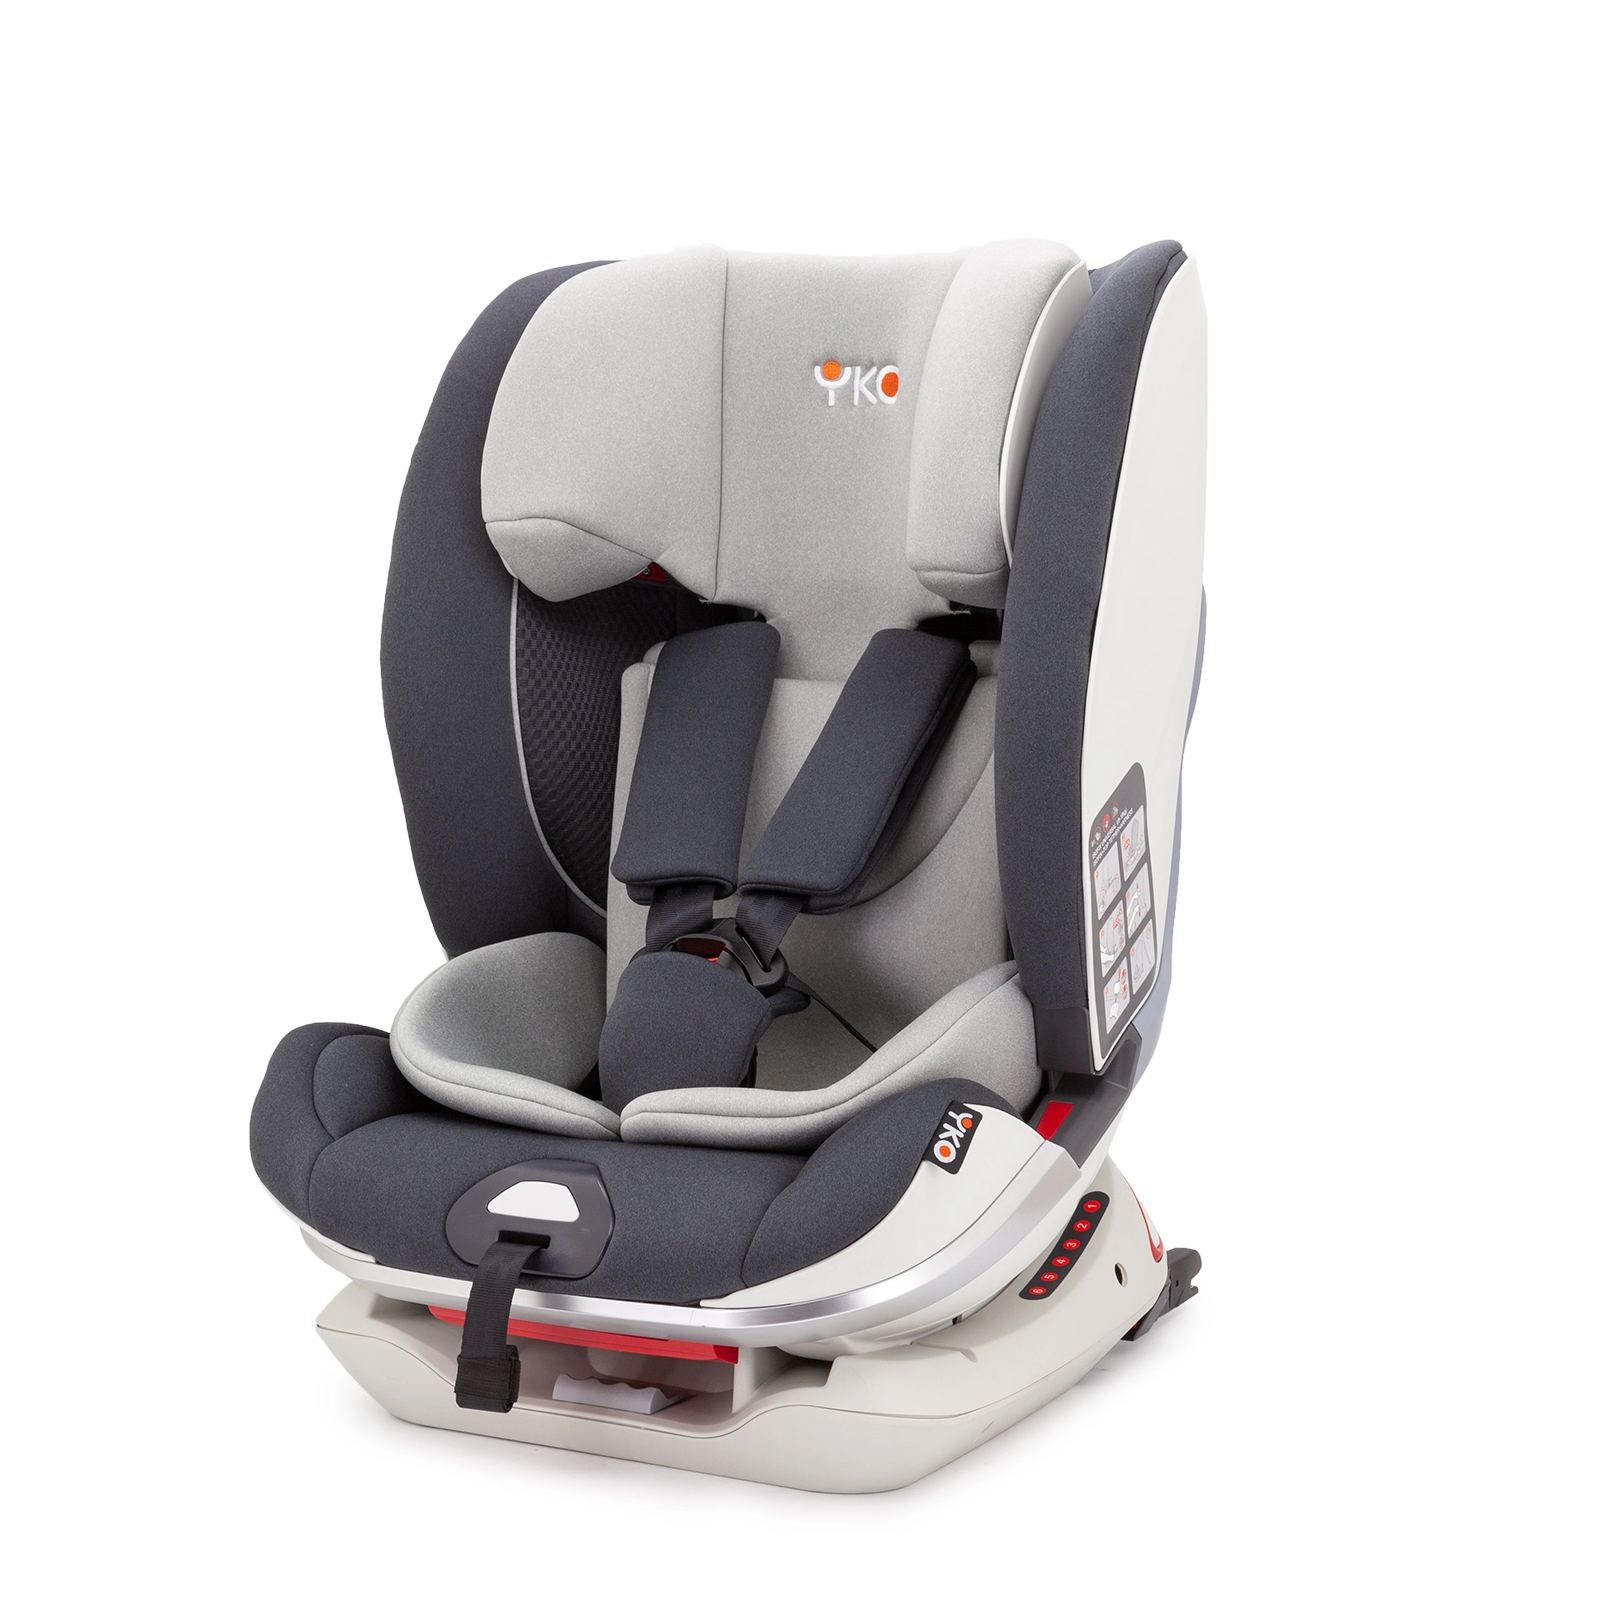 YKO - 951 Child Car Seat